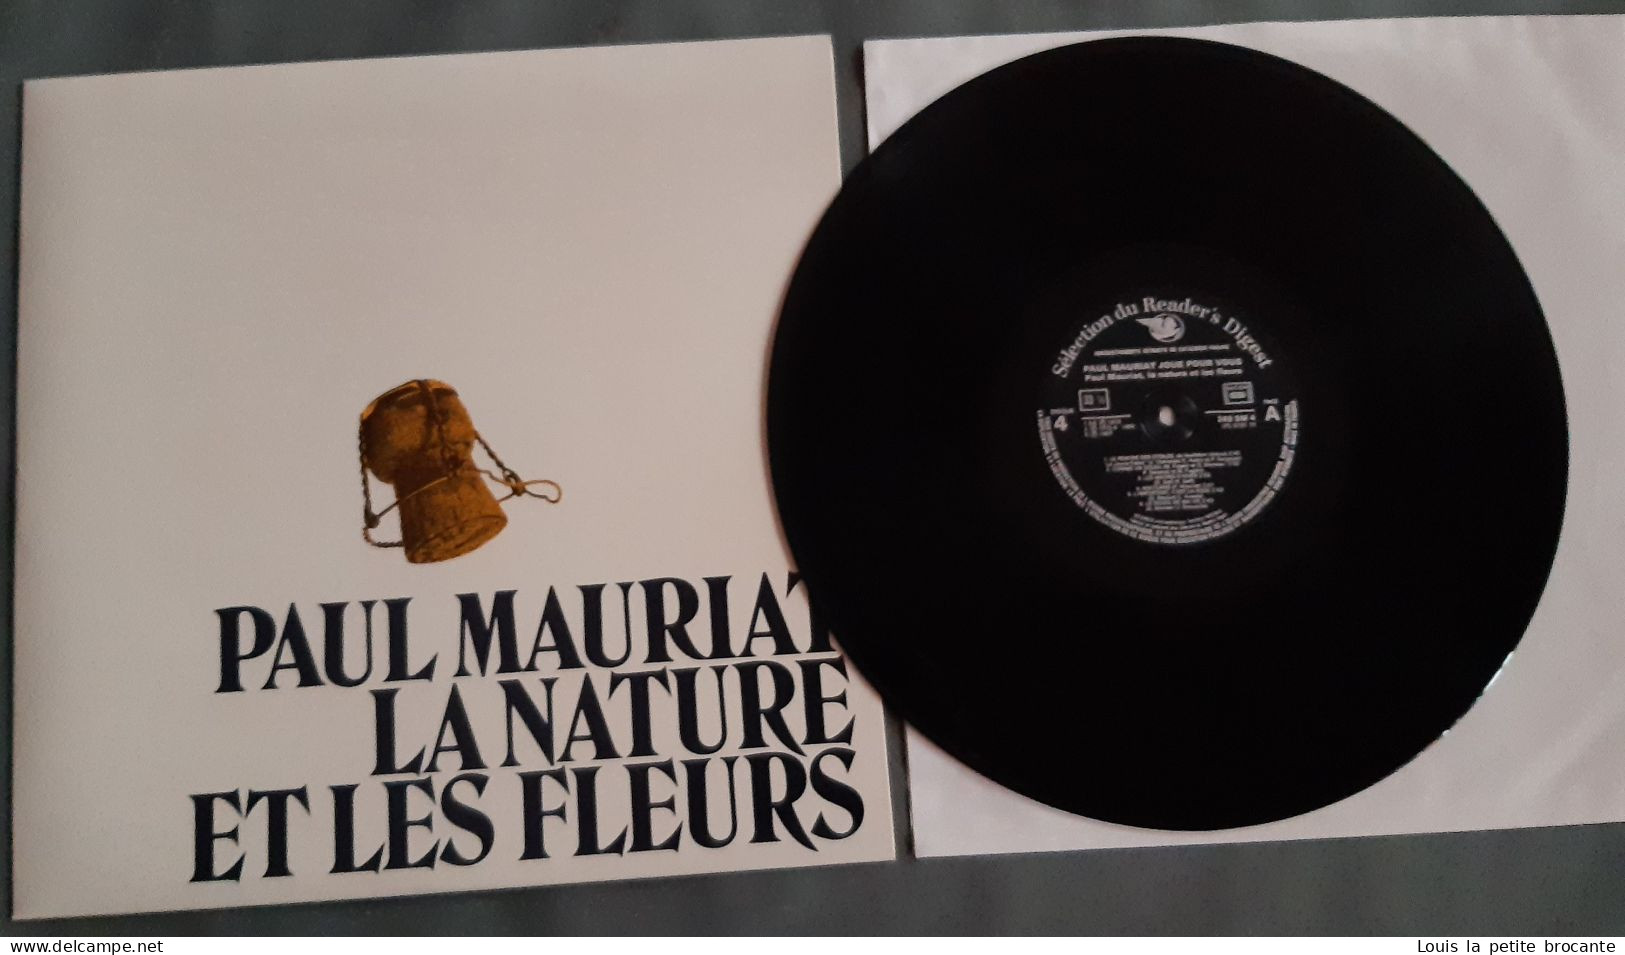 Coffret de 9 disques, "Paul MAURIAT joue pour vous", Sélection du Reader's Digest, 33tours stéréo, très bon état,